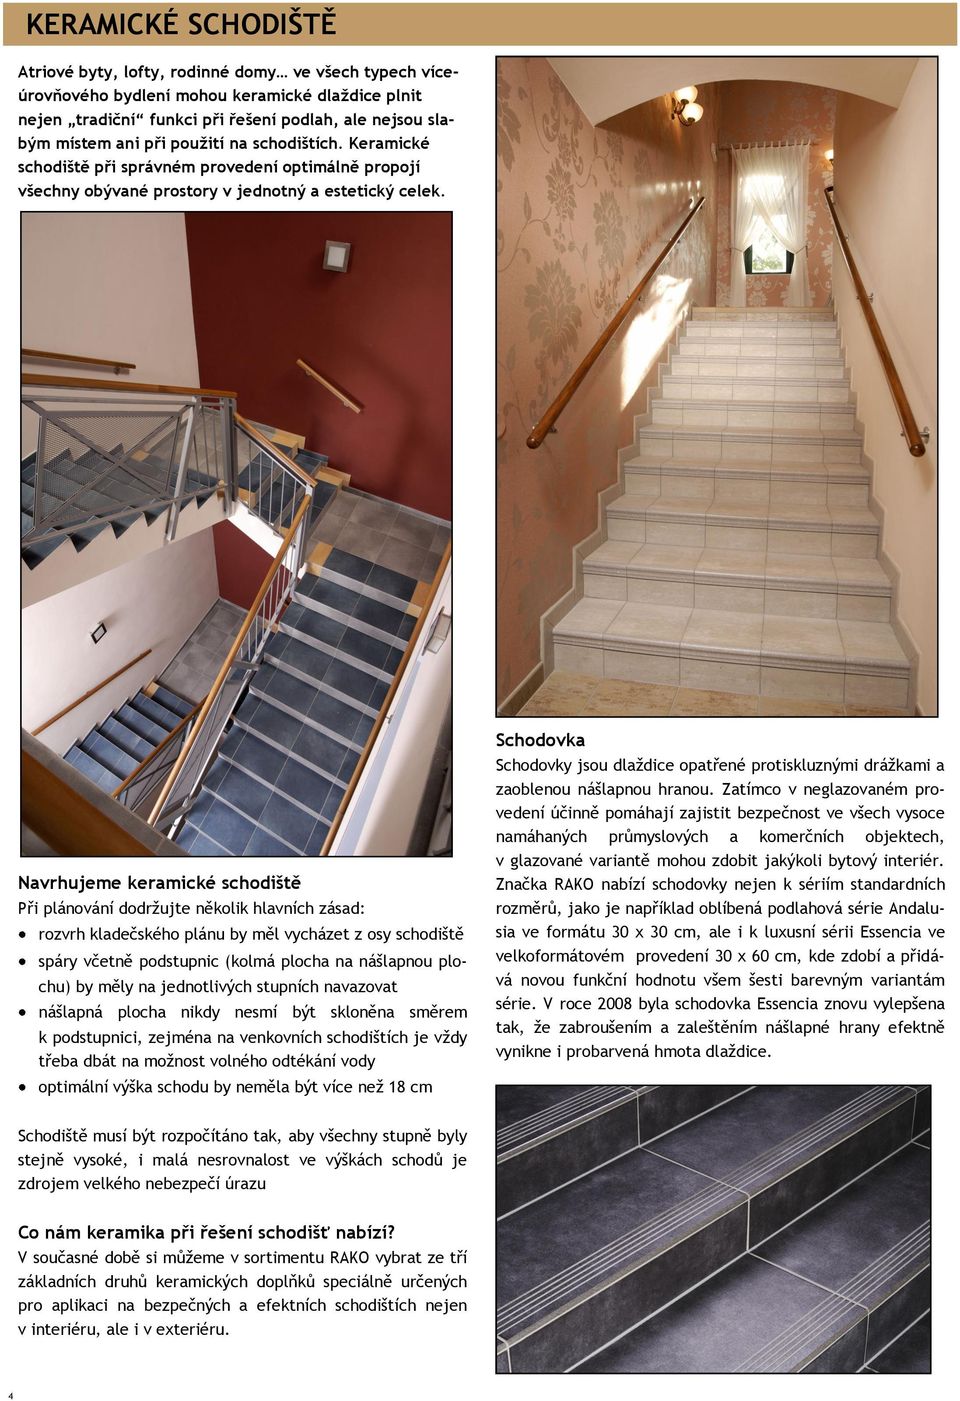 Navrhujeme keramické schodiště Při plánování dodrţujte několik hlavních zásad: rozvrh kladečského plánu by měl vycházet z osy schodiště spáry včetně podstupnic (kolmá plocha na nášlapnou plochu) by